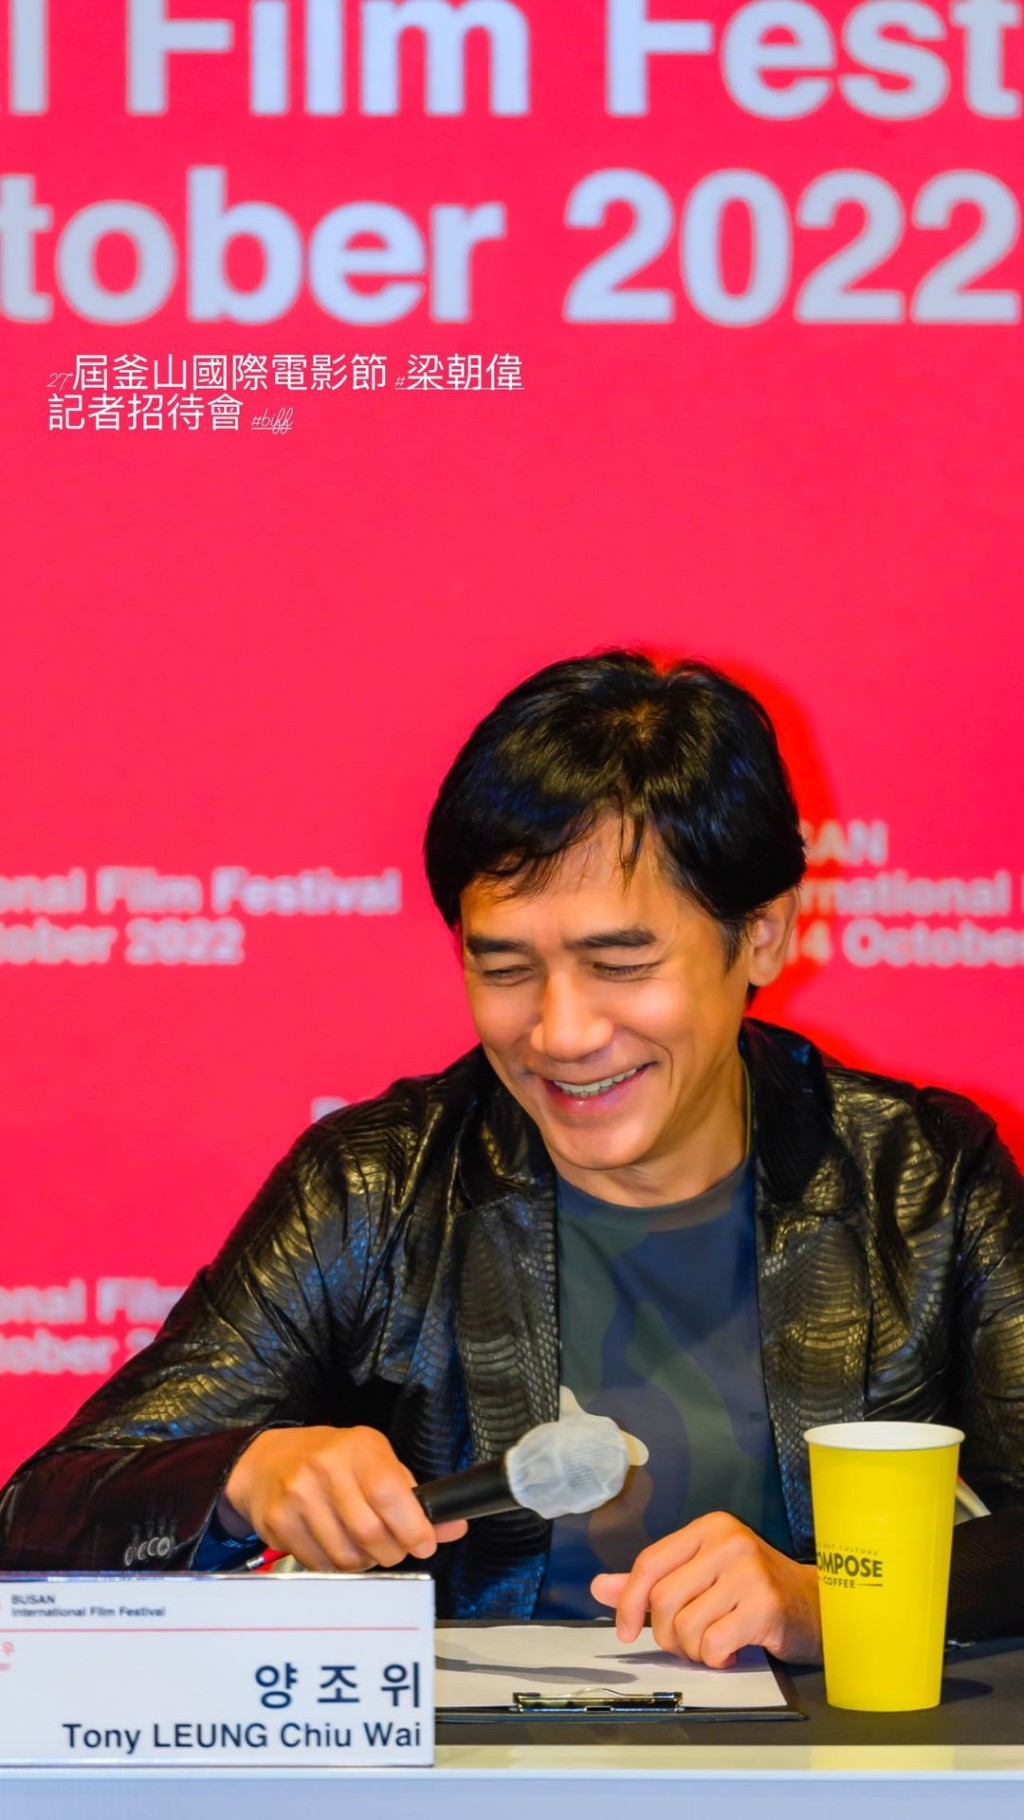 去年底梁朝偉獲得釜山電影節的亞洲電影人獎，在當地出席不少活動，劉嘉玲當時亦有愛相隨。